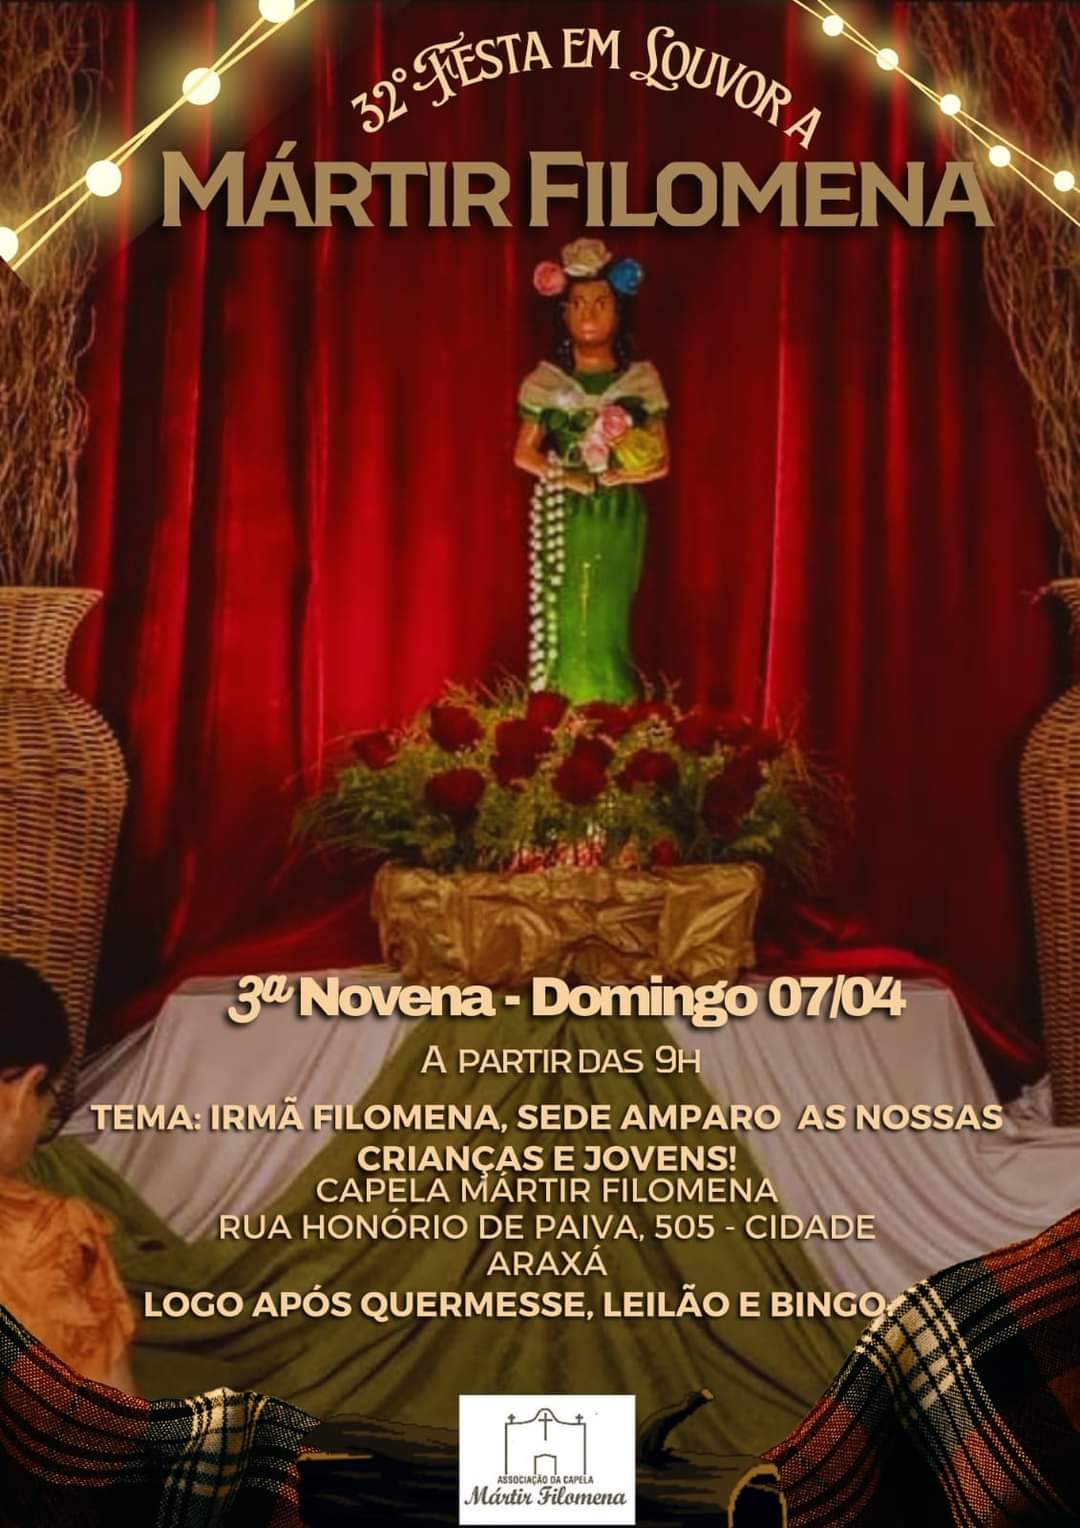 Vem aí a 32ª Festa em Louvor a Mártir Filomena!